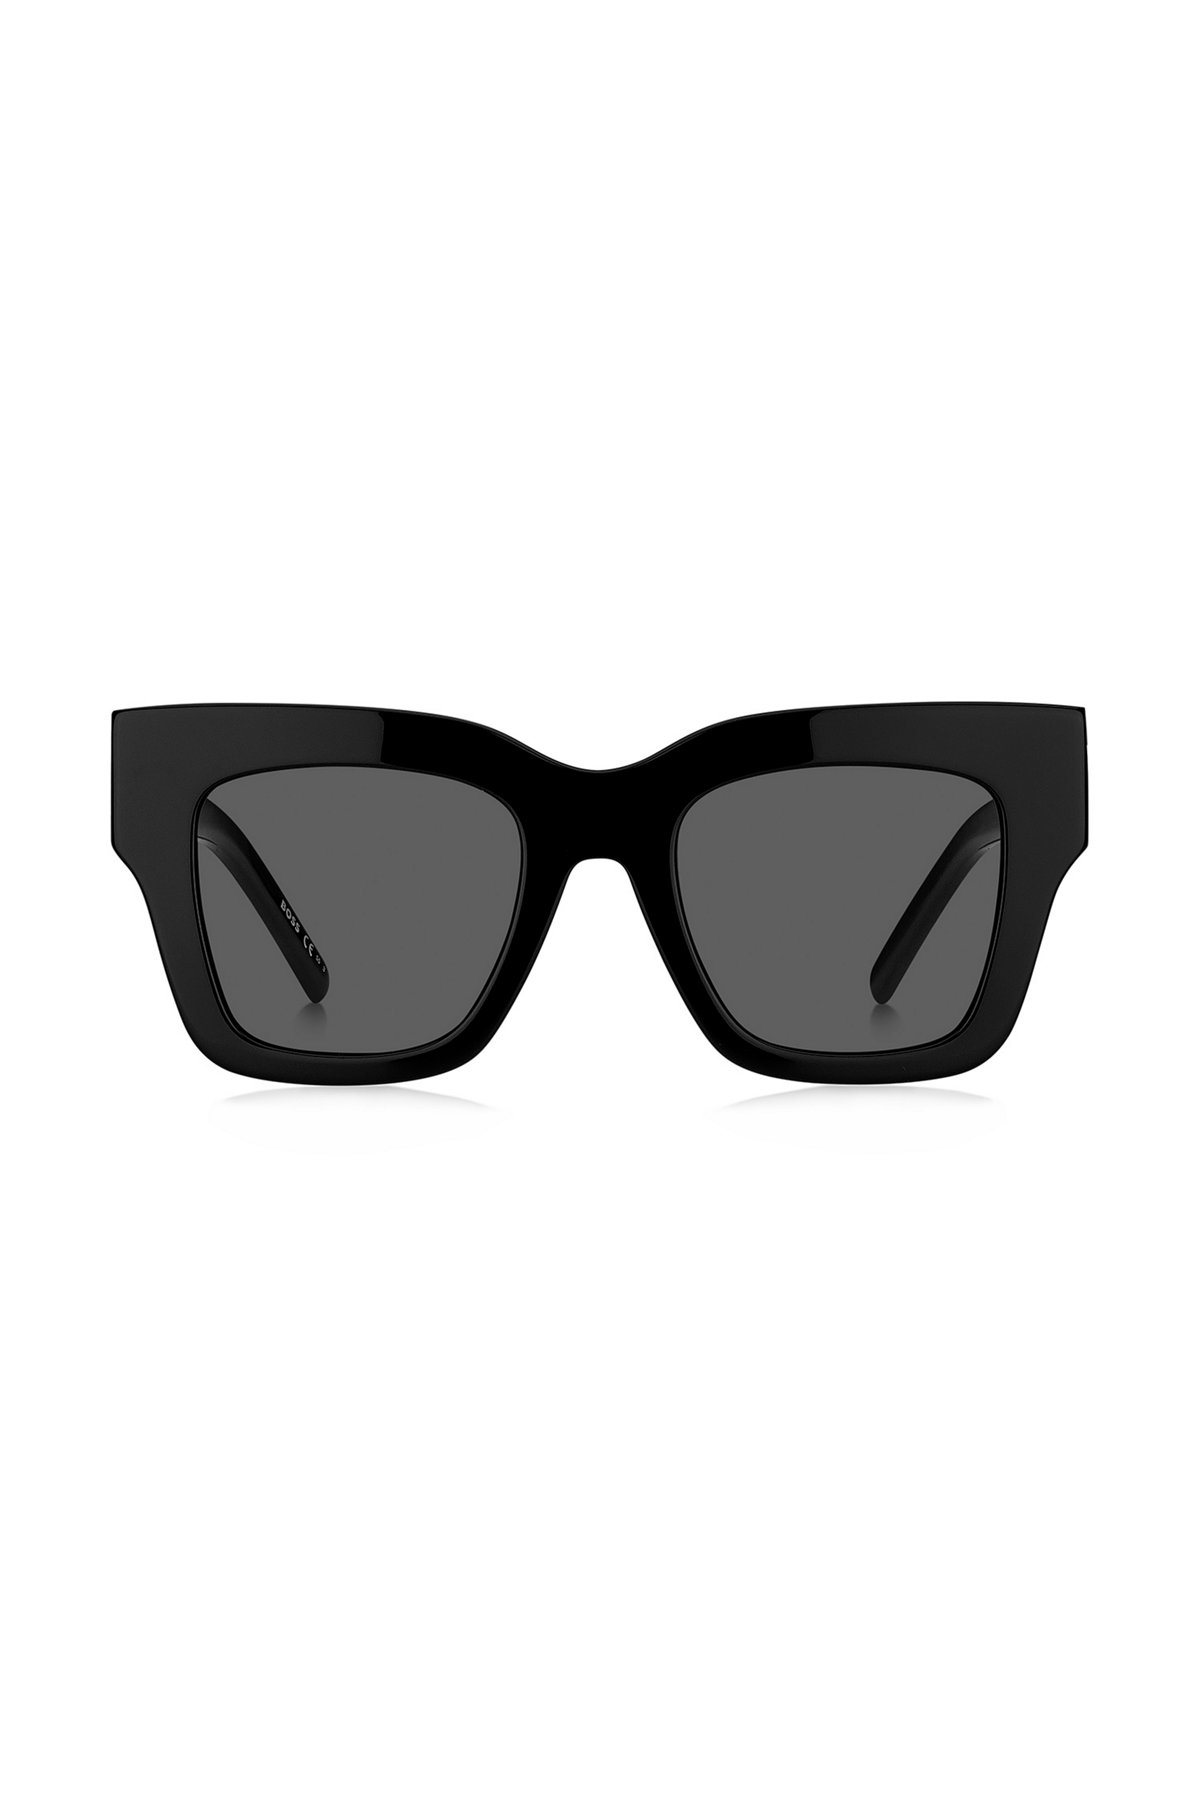 Black-acetate sunglasses with signature hardware, Black